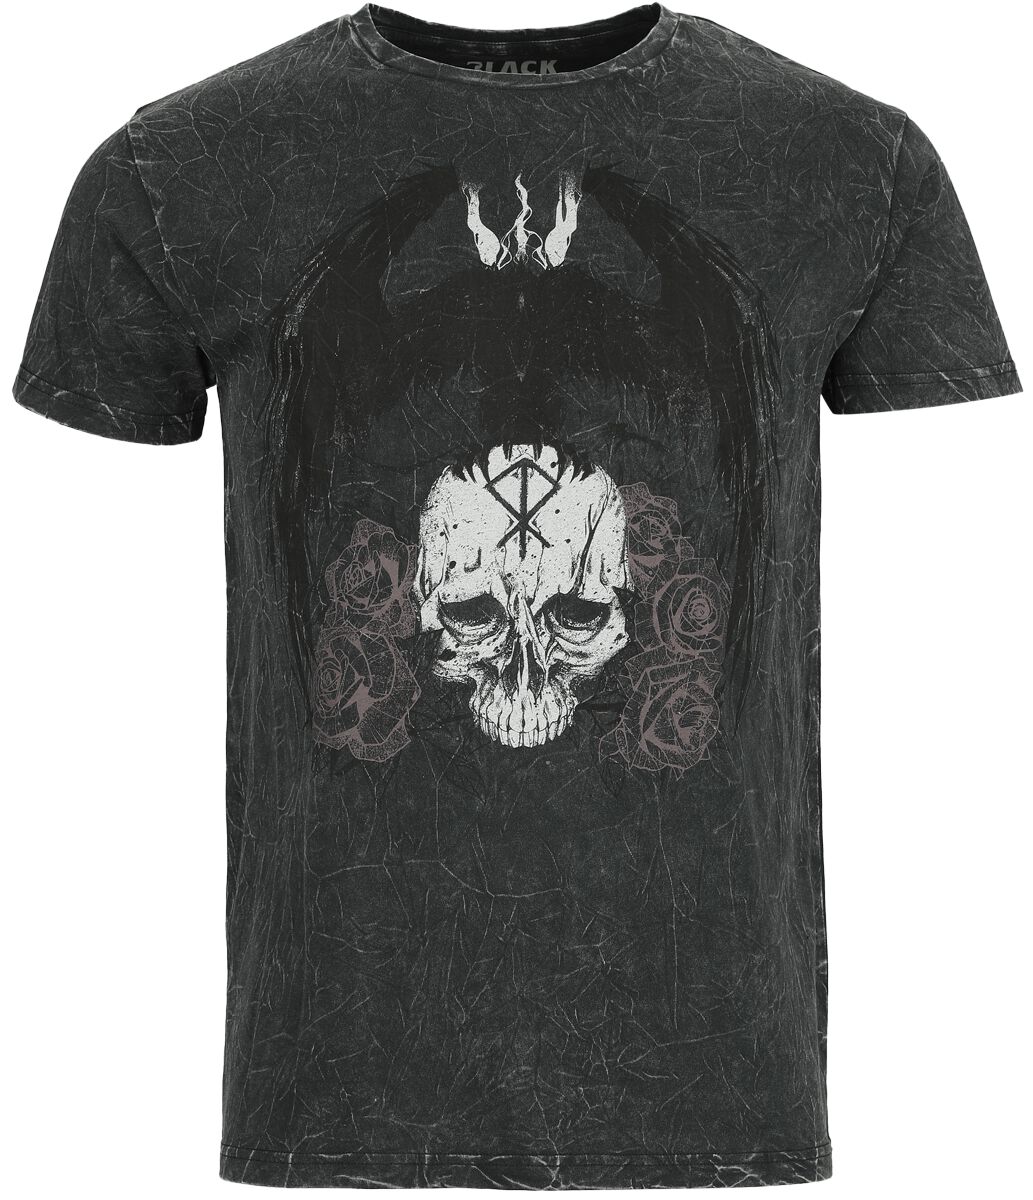 Black Premium by EMP T-Shirt - Black Washed T-Shirt with Skull and Crow Print - L bis XL - für Männer - Größe XL - grau